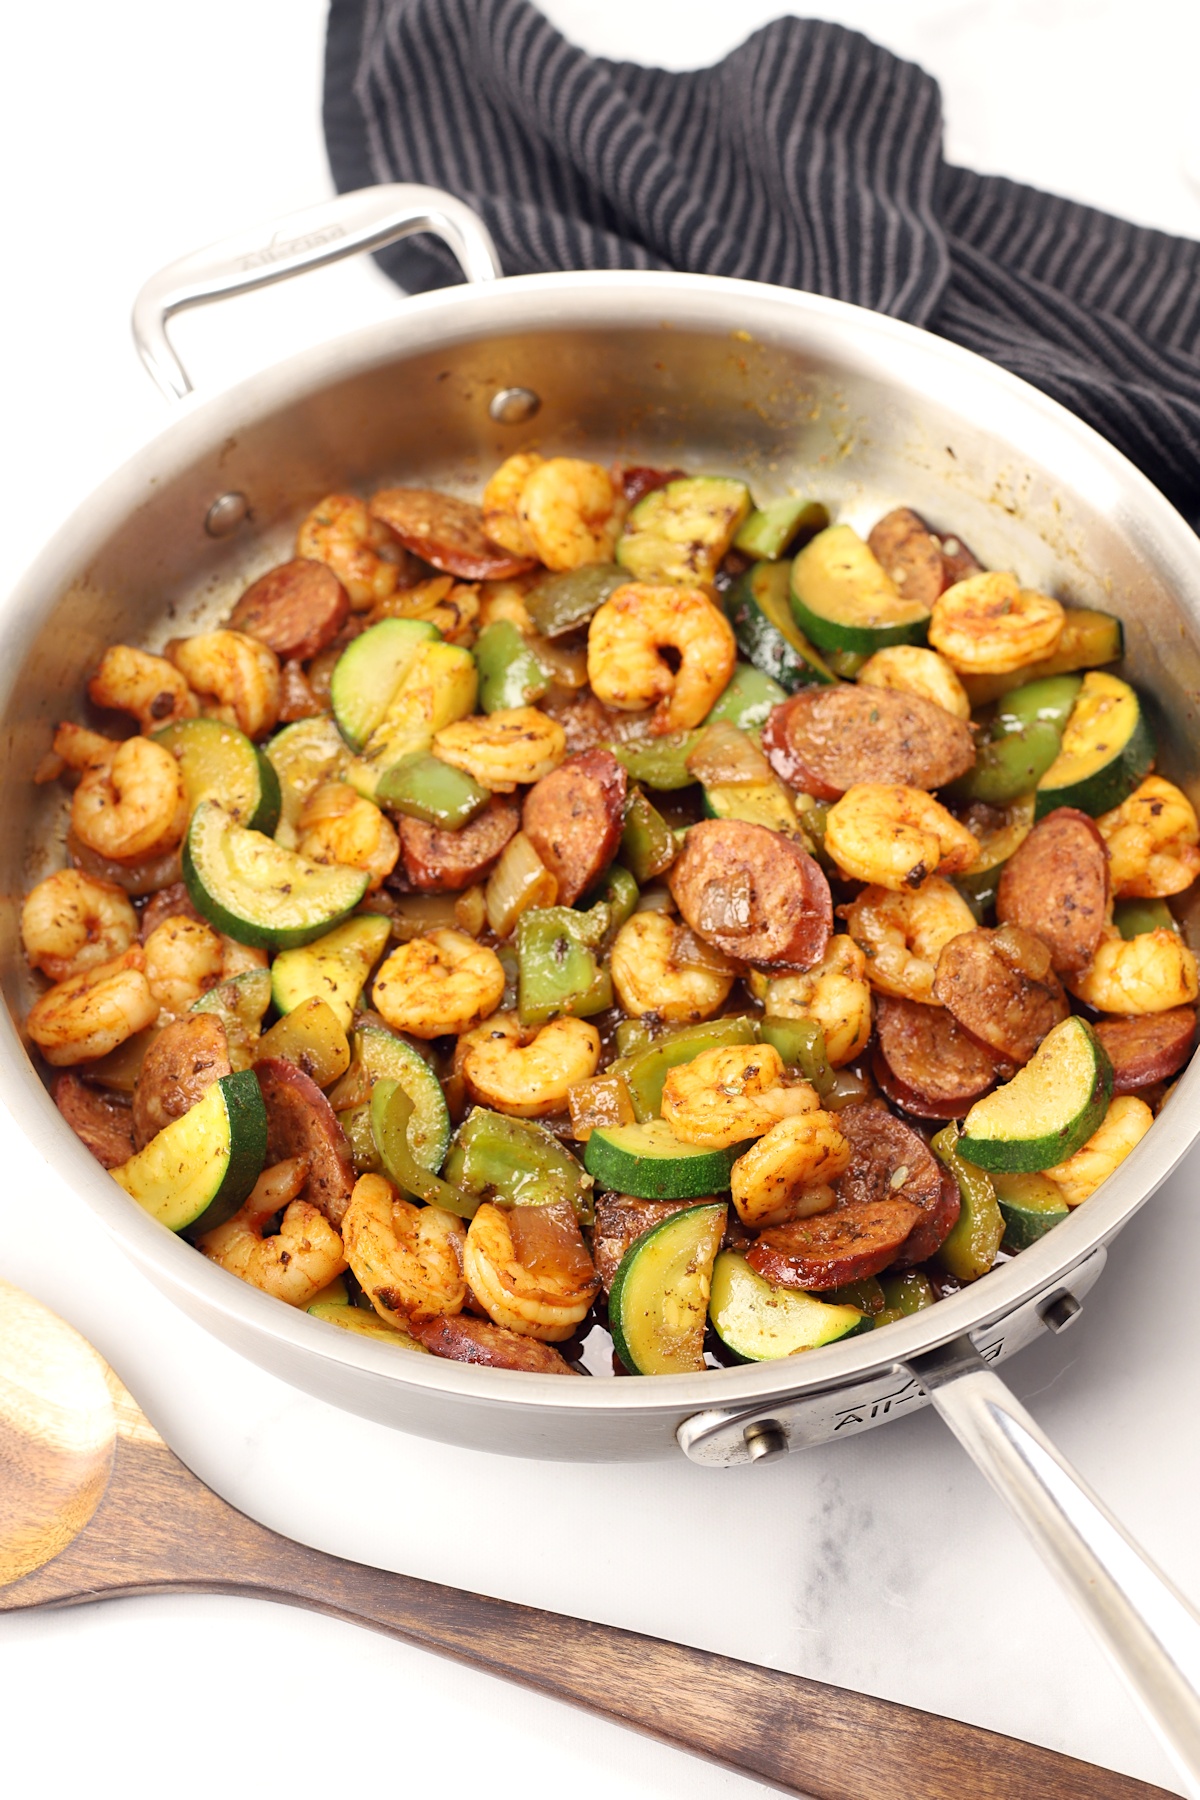 A saute pan filled with shrimp, sausage, and veggies.